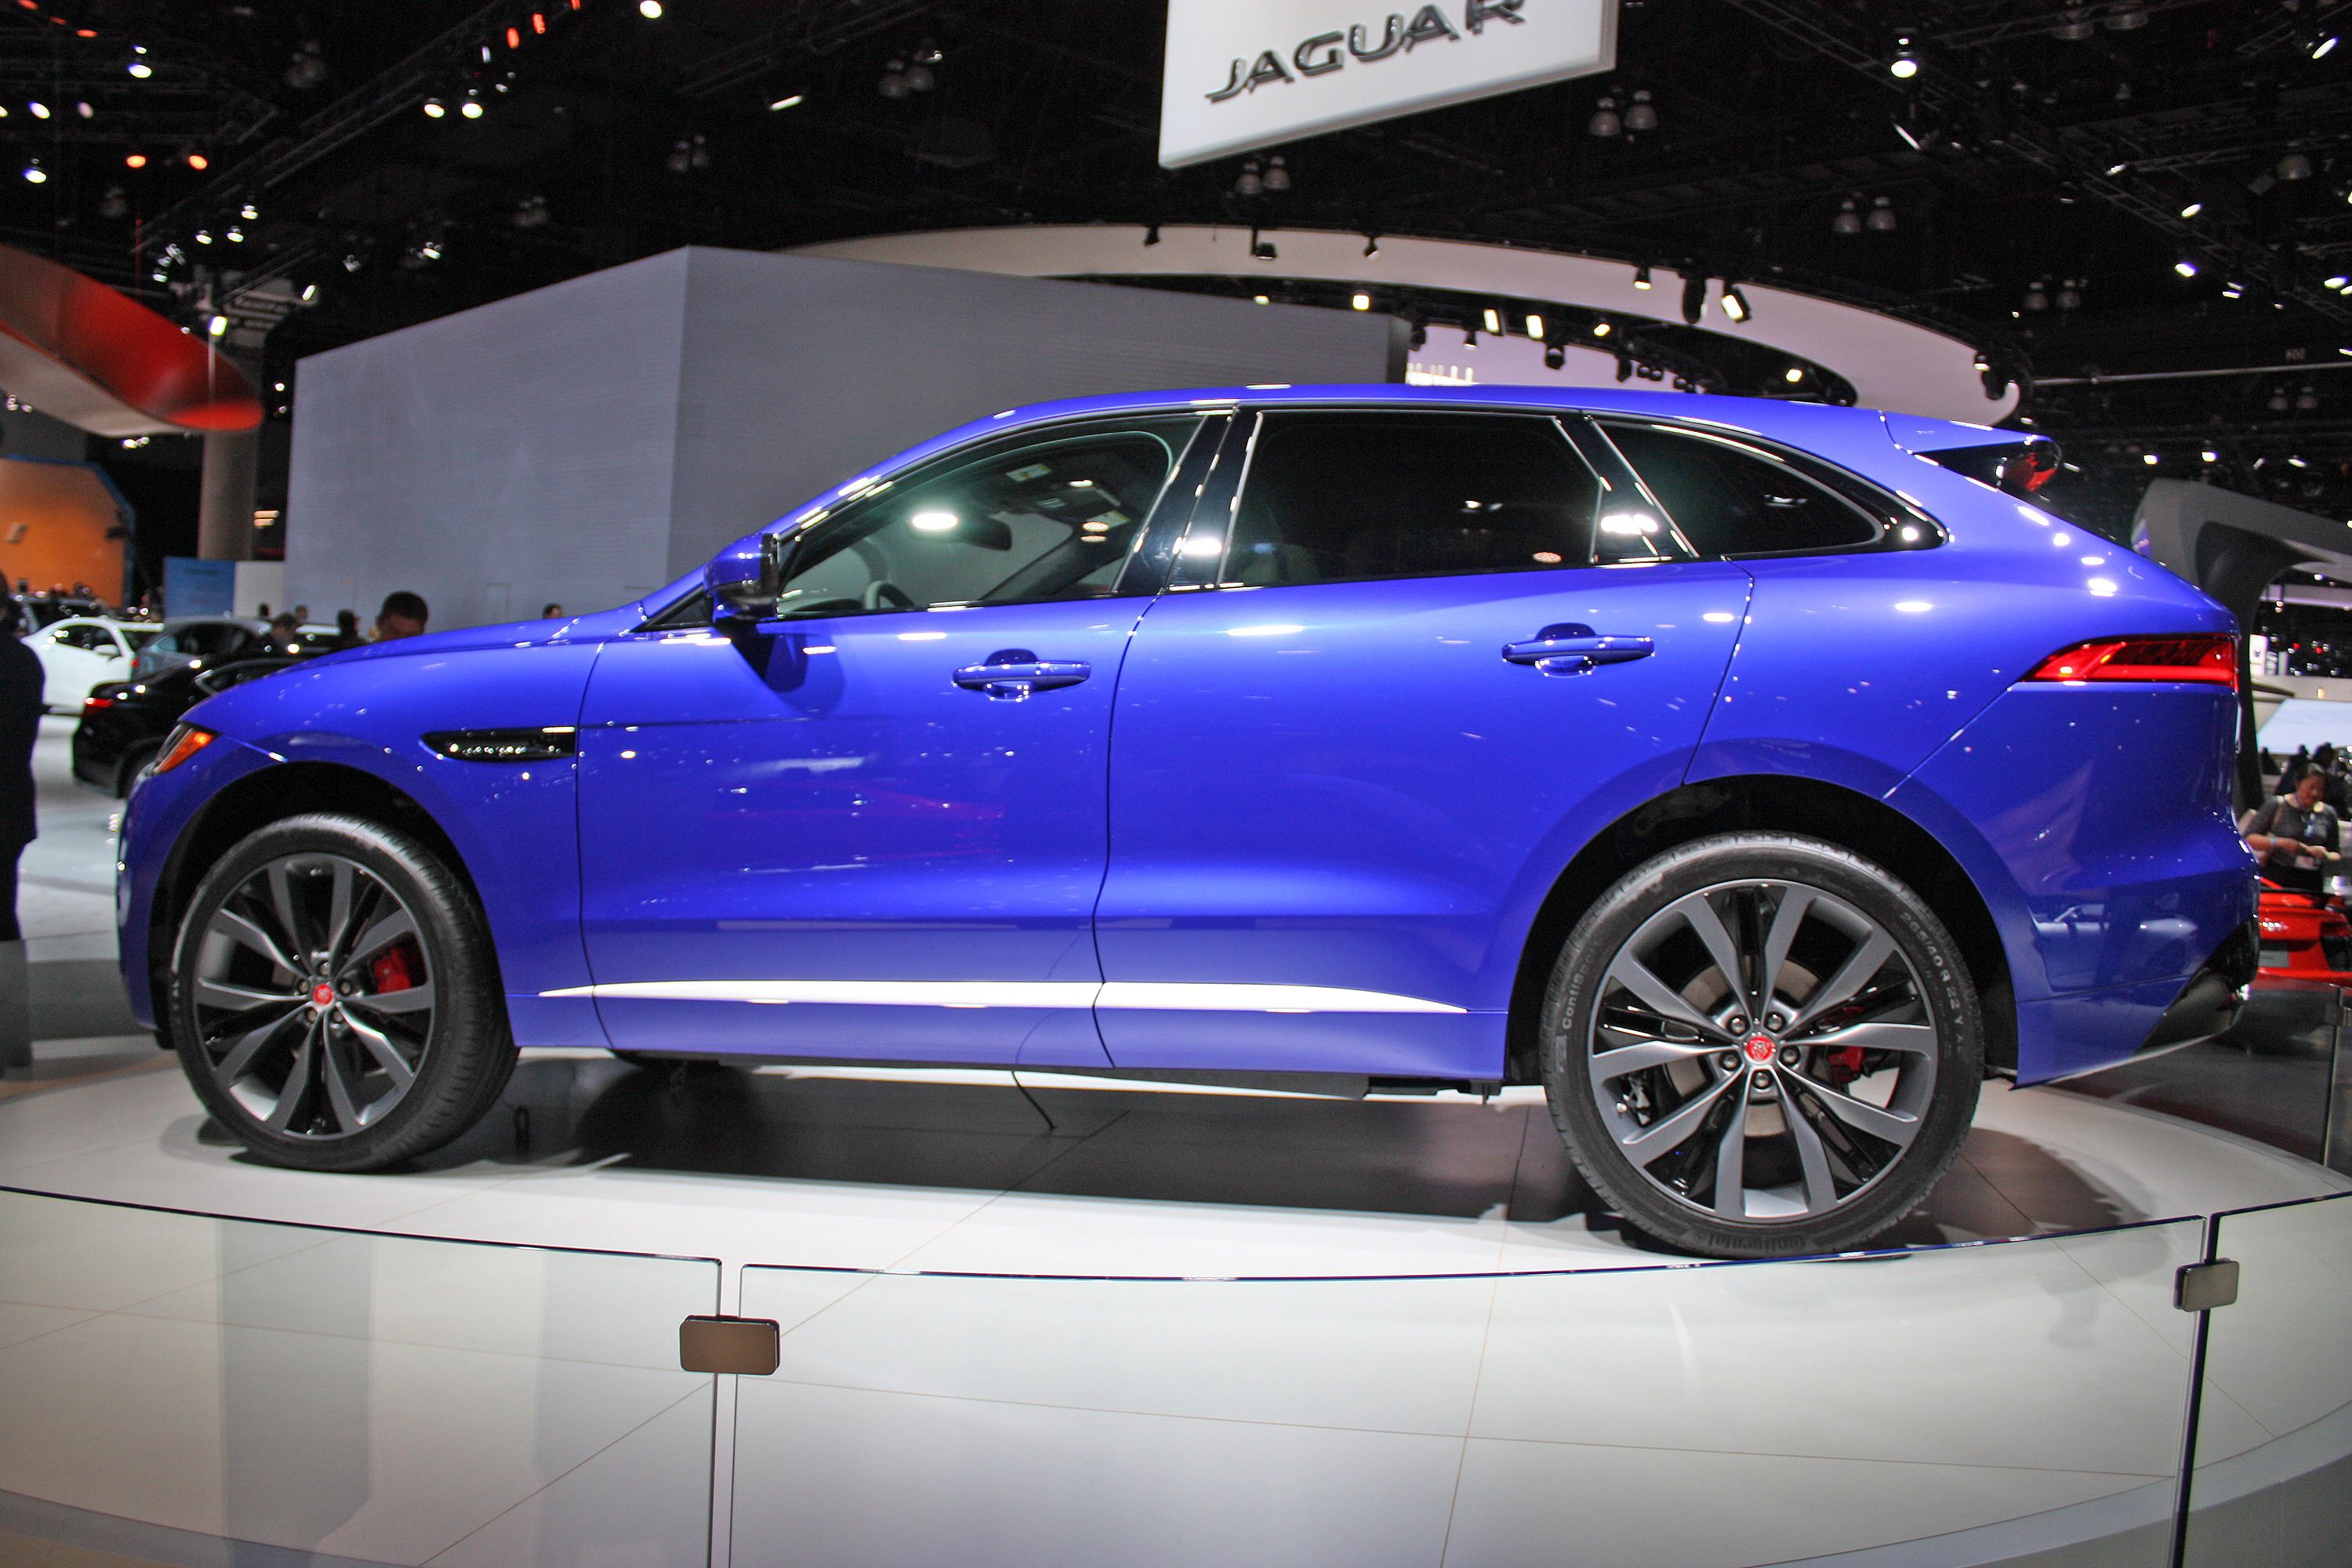 2017 - 2019 Jaguar F-Pace